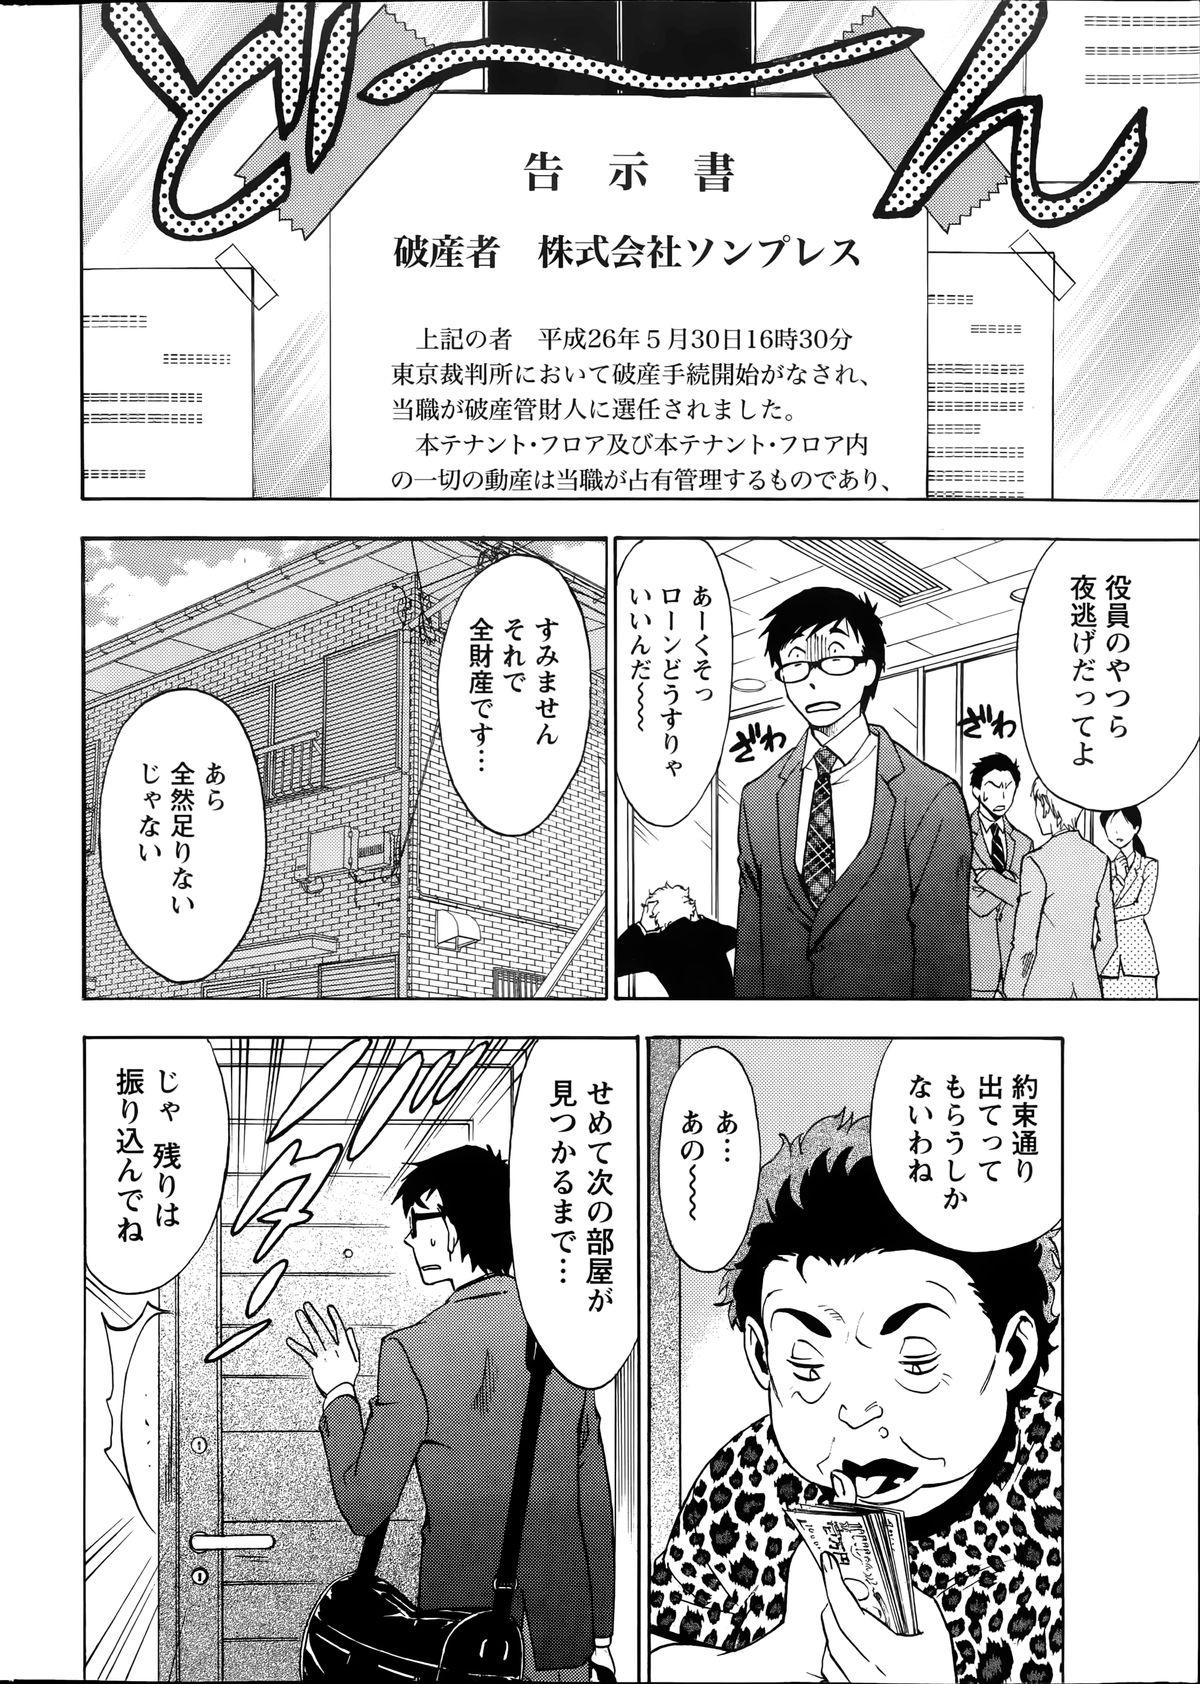 [Sawada Furope] Nise kon! - Spectacular Happy Sham Marriage! Ch.1-5 5